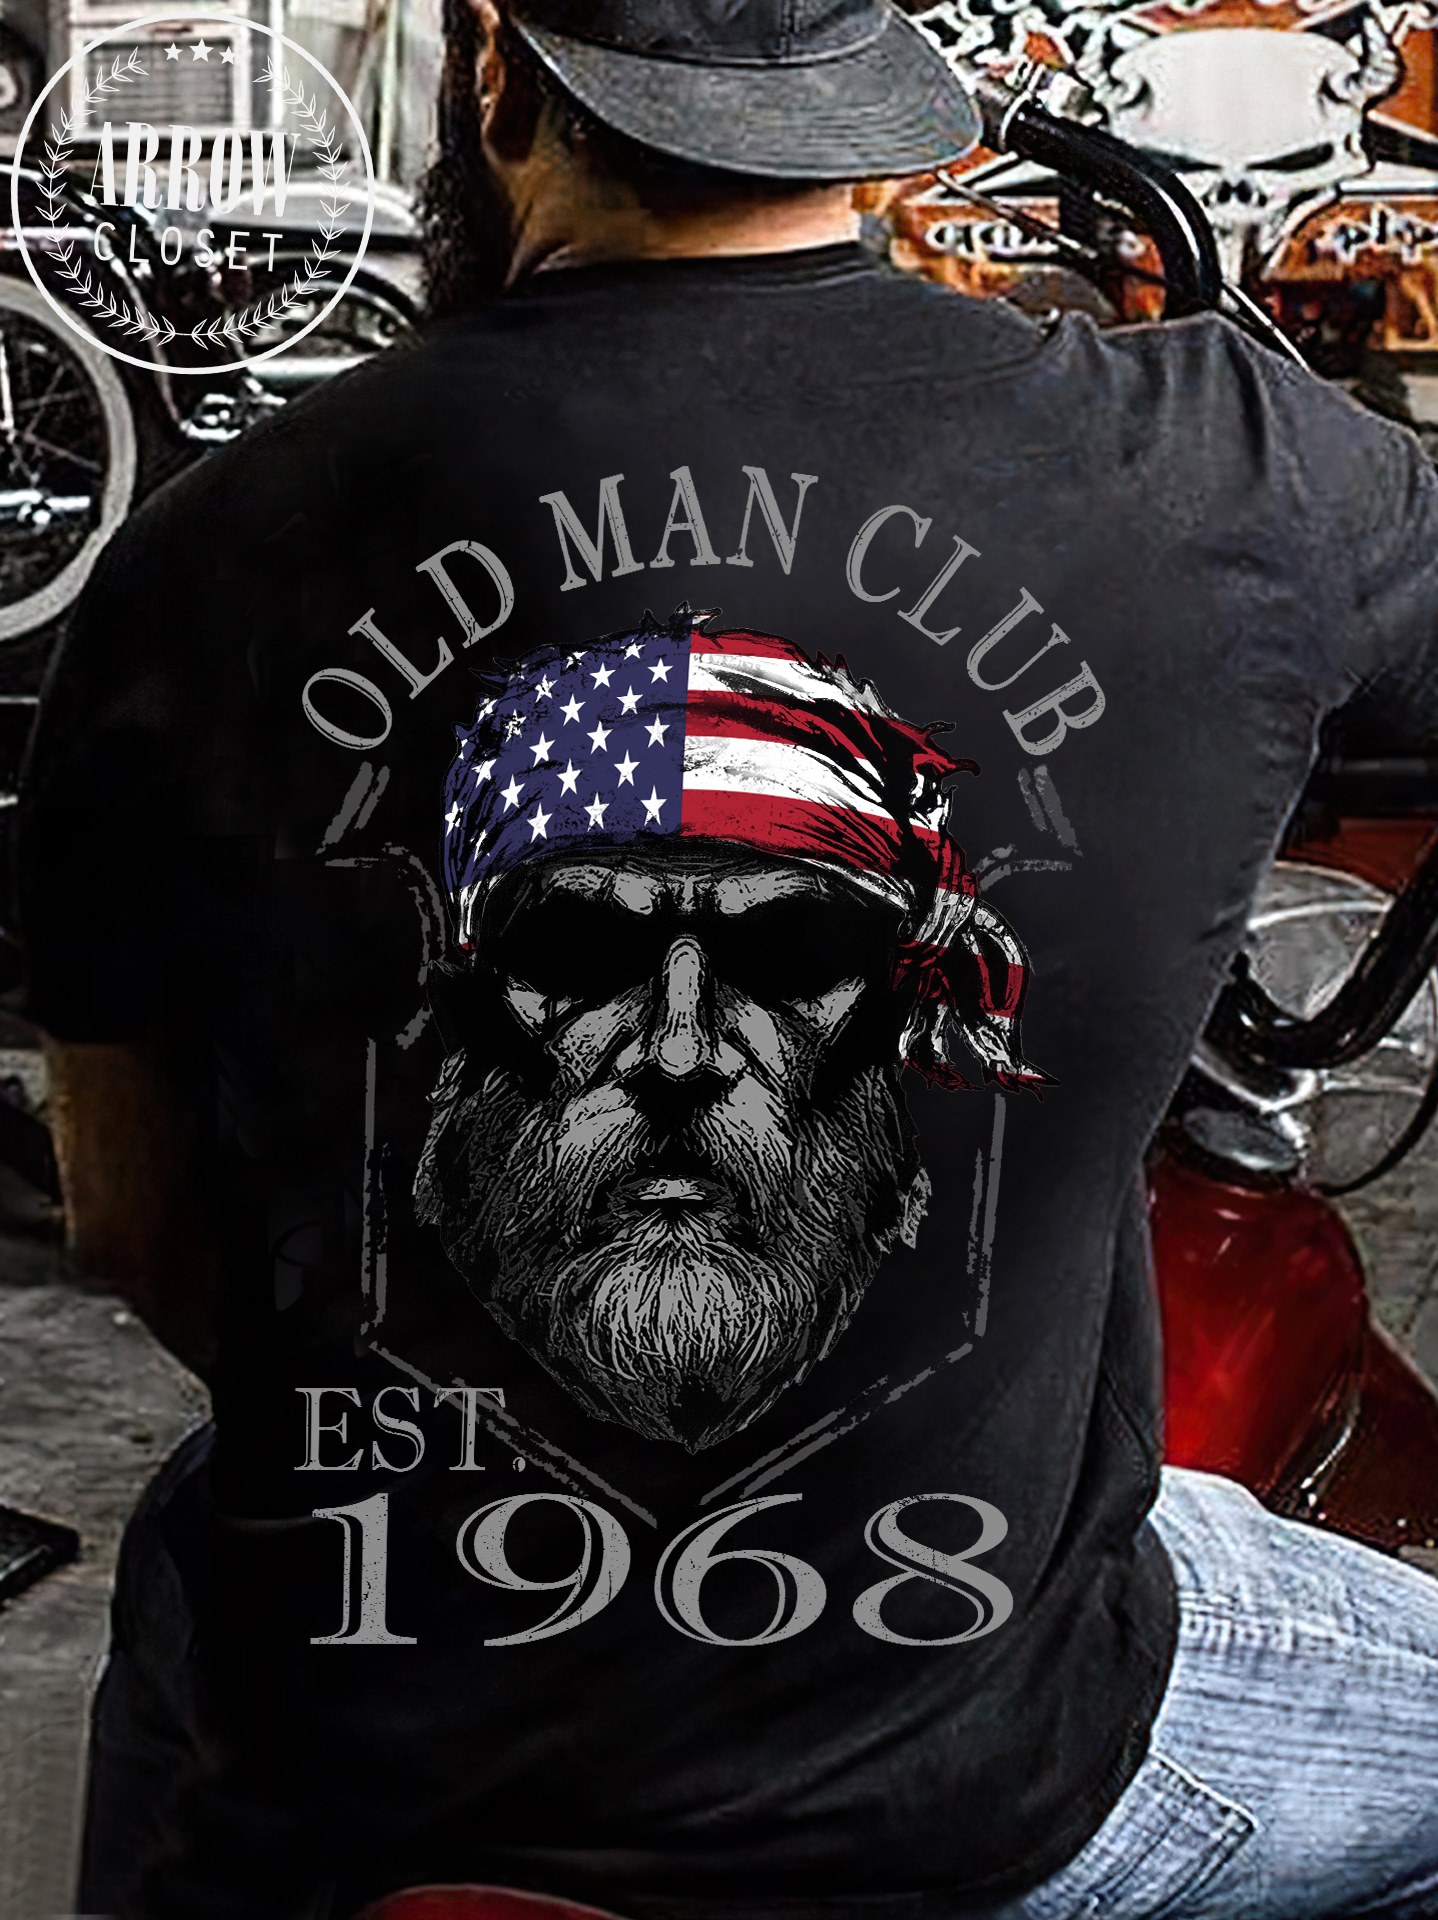 Old man club est 1968 - Man with america flag